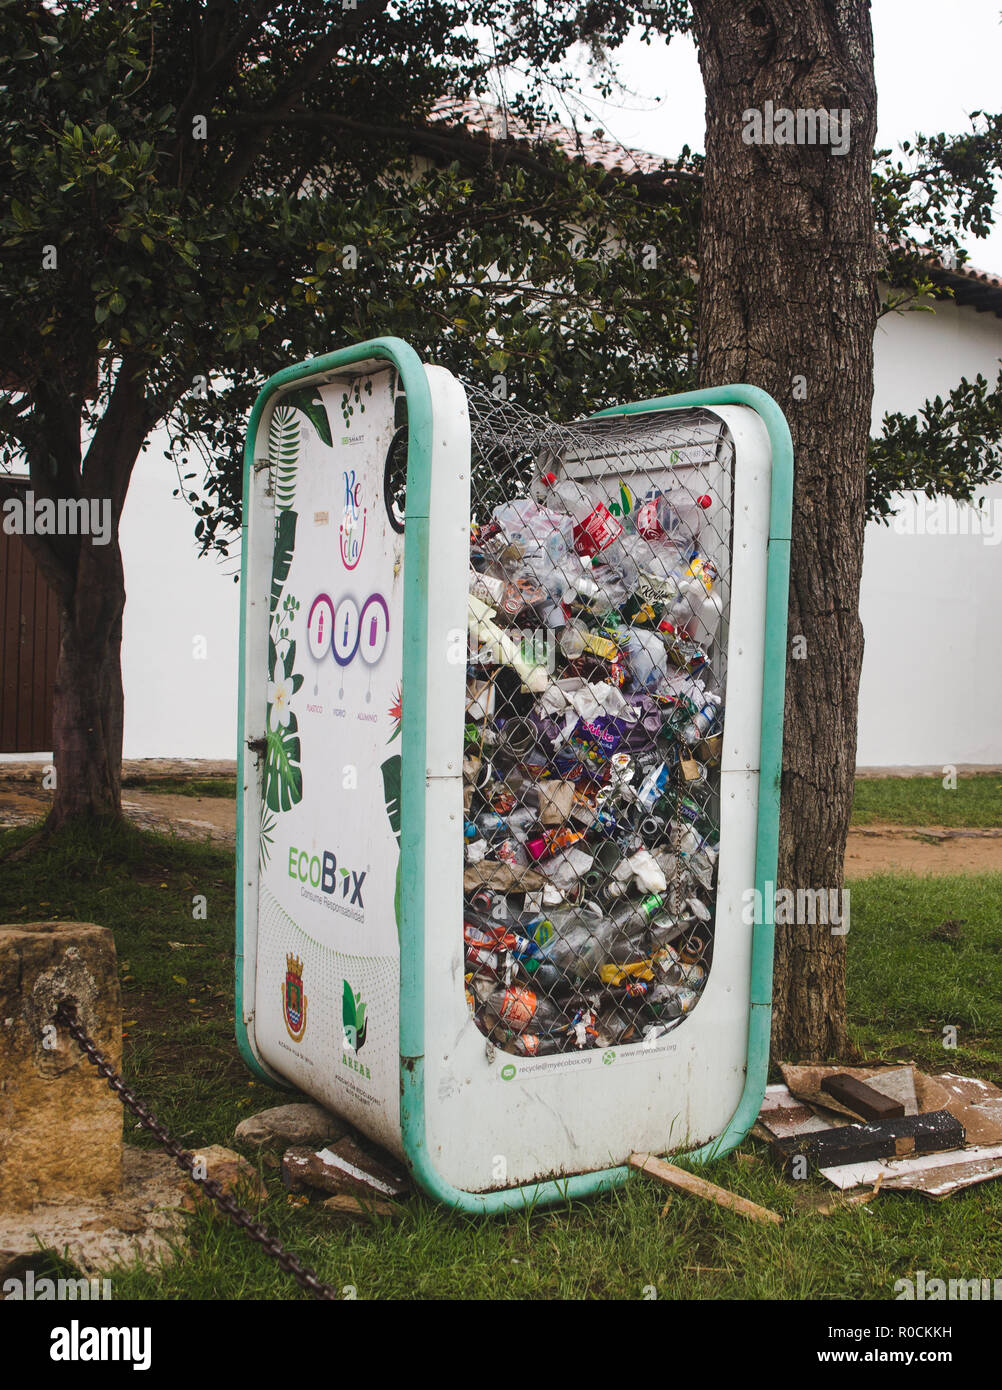 Point de collecte pour recyclage Ecobox de bouteilles et d'autres matières plastiques dans le cadre de l'initiative de l'environnement Banque D'Images